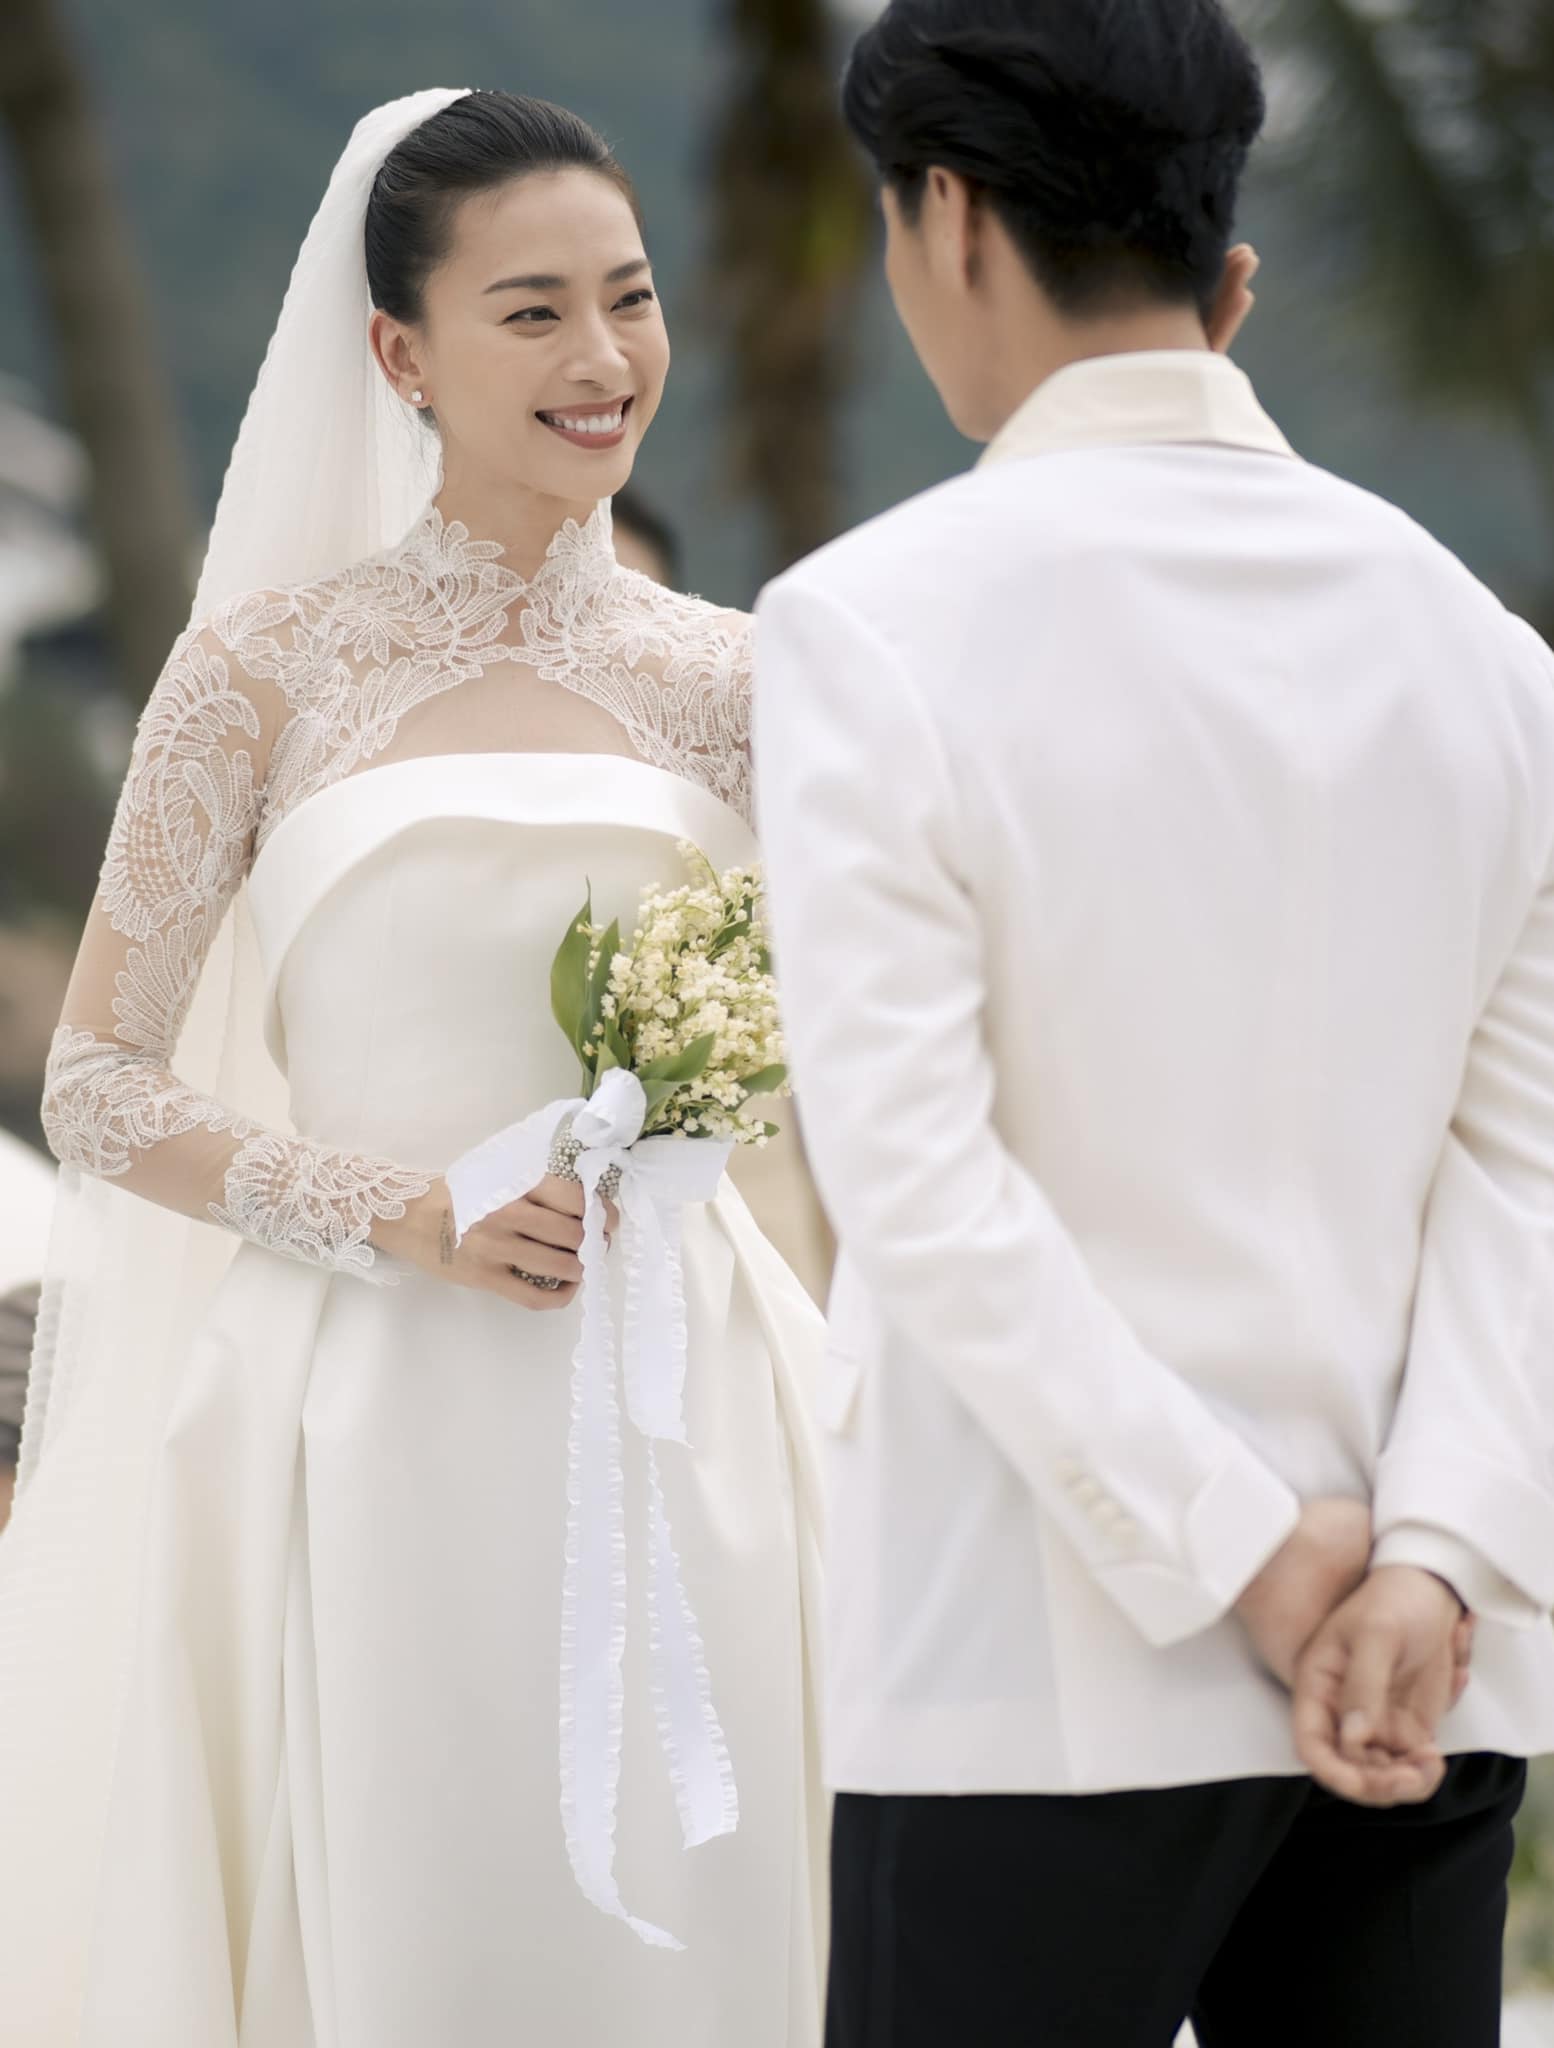 Đám cưới đặc biệt của Ngô Thanh Vân và Huy Trần - Ảnh 2.